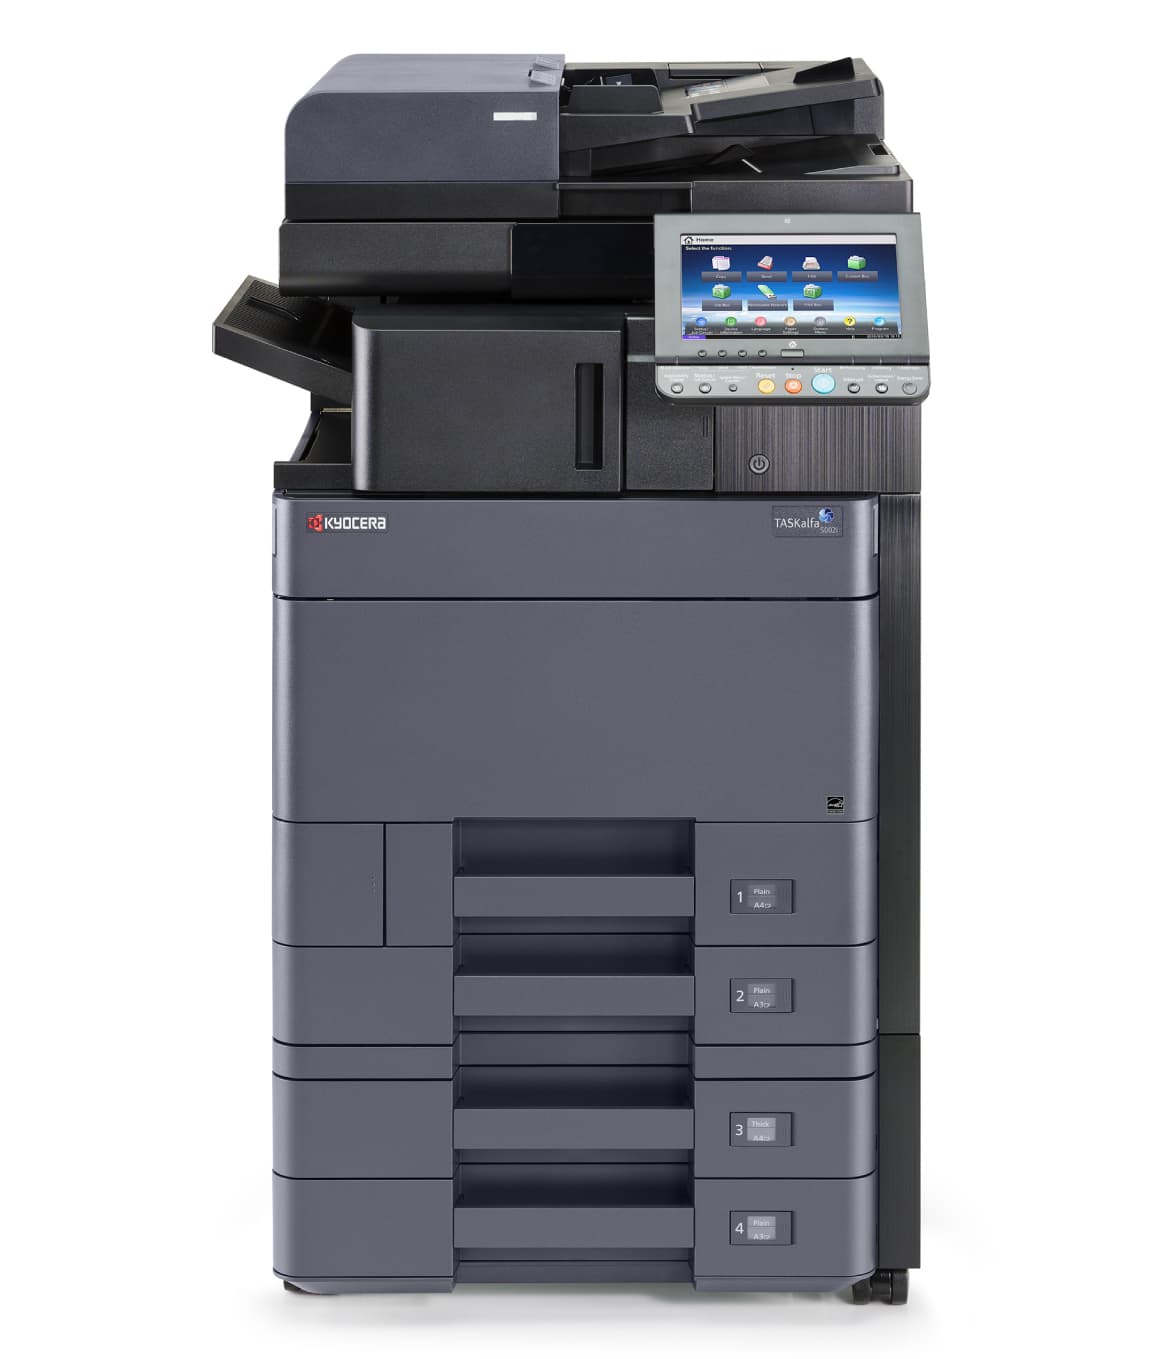 Renting de fotocopiadoras e impresoras multifunción en Logroño La Rioja,  distribuidor, ofertar, precio, alquiler, leasing